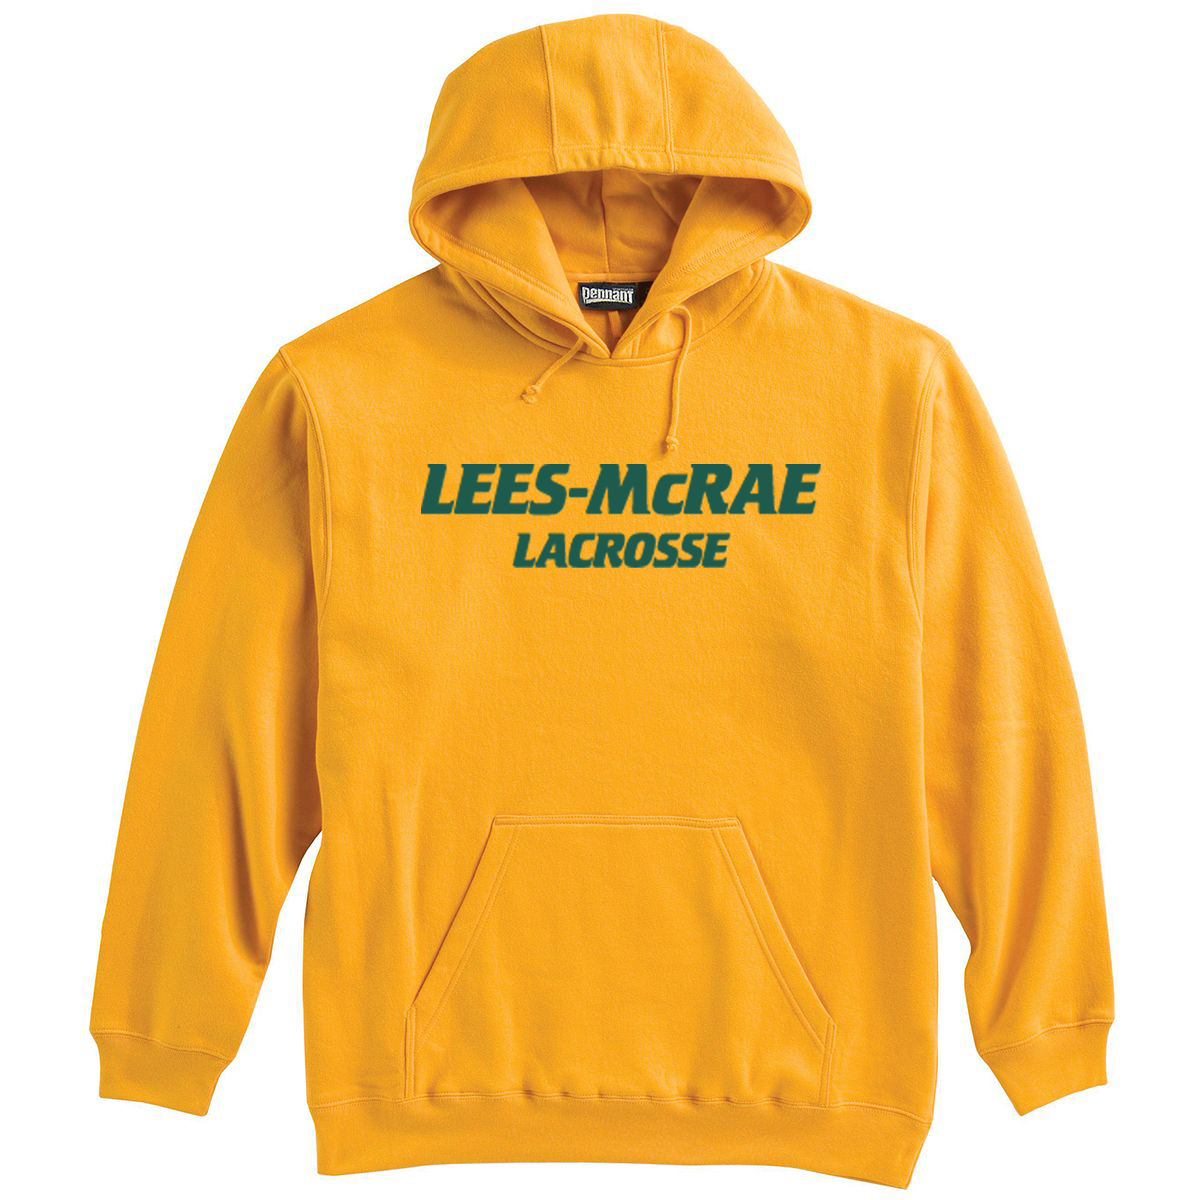 LMC Men's Lacrosse Sweatshirt